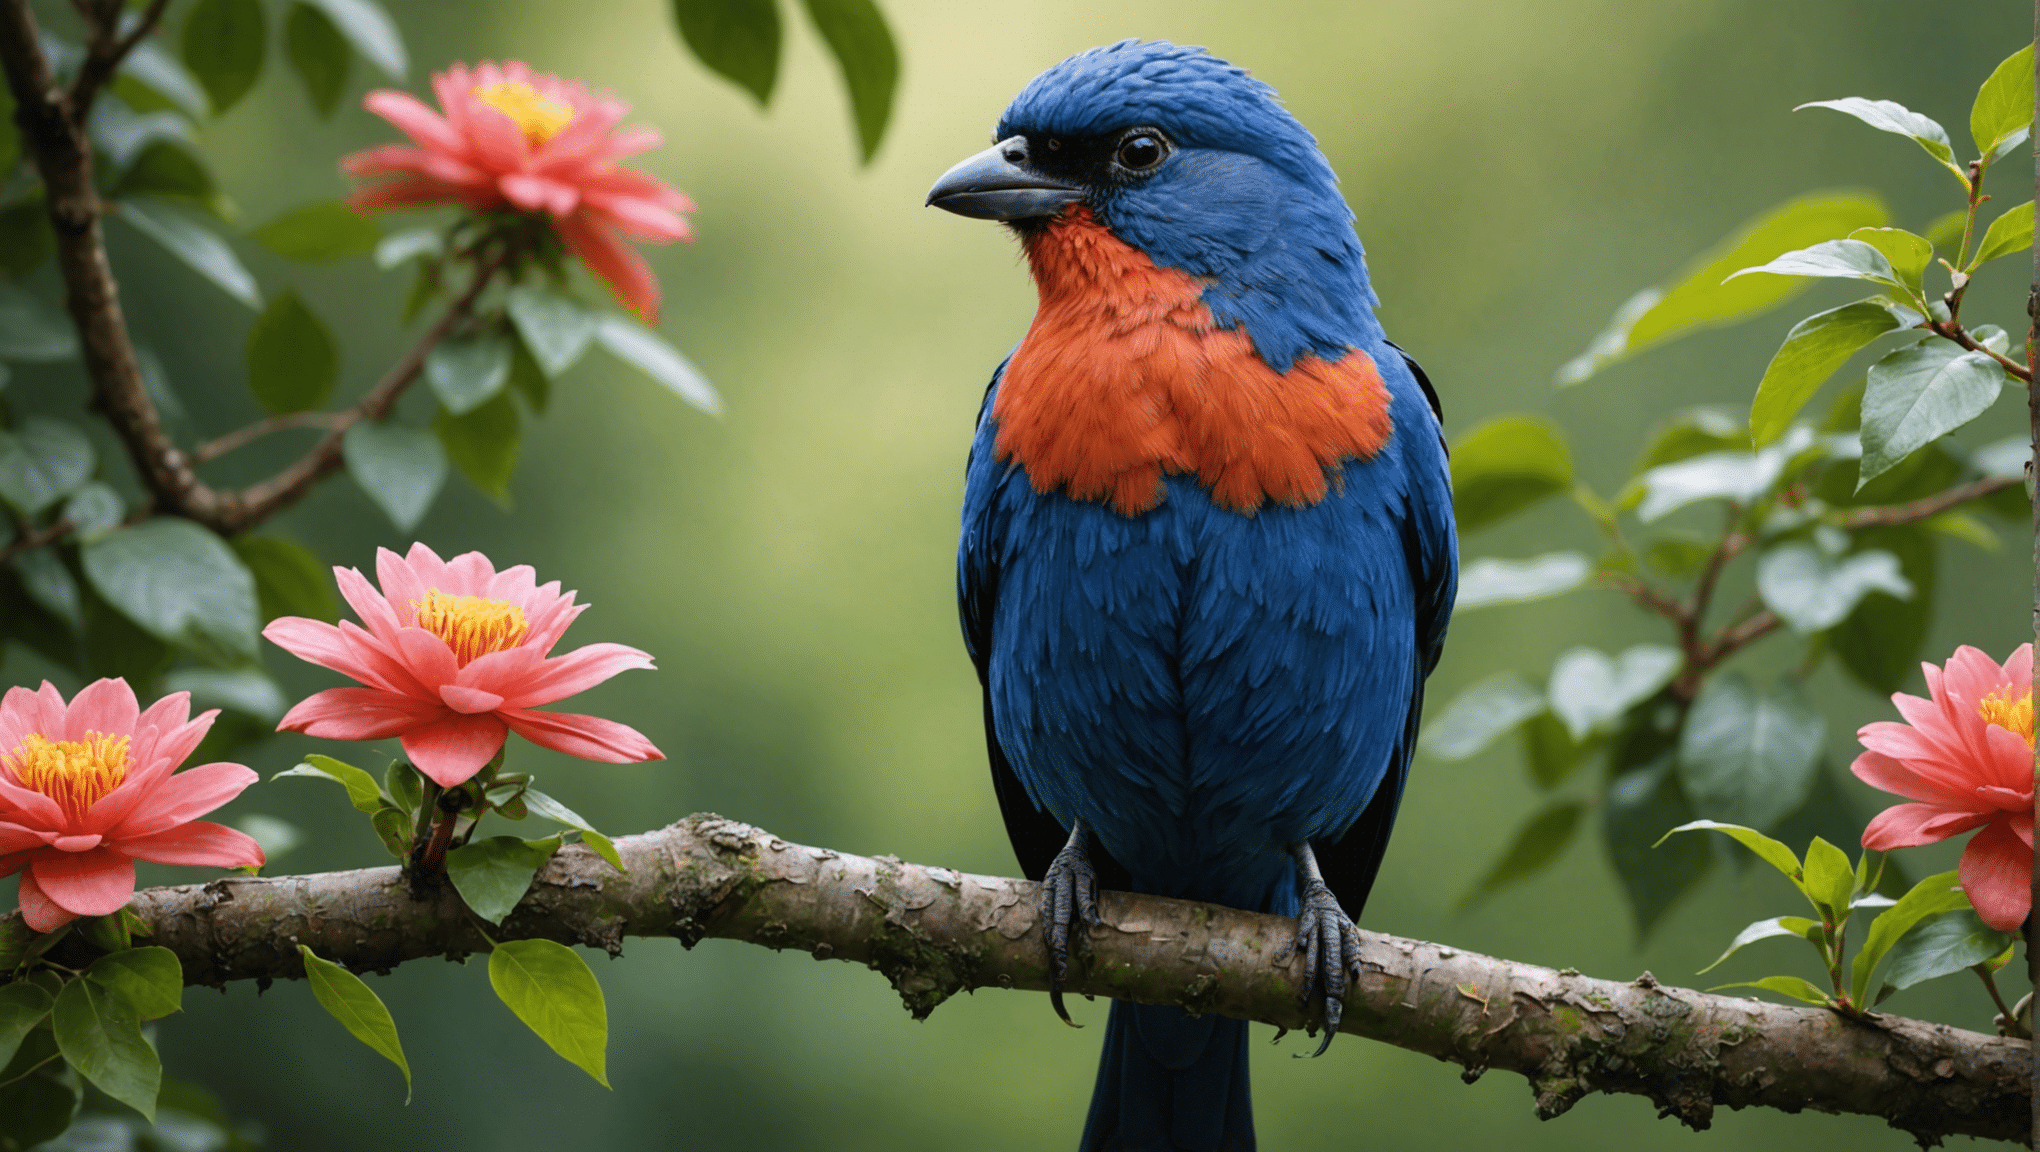 ¿Son realmente hermosos los pájaros feos? descúbrelo en esta fascinante exploración de la belleza oculta de la naturaleza y la sorprendente verdad detrás de la belleza de pájaros aparentemente feos.